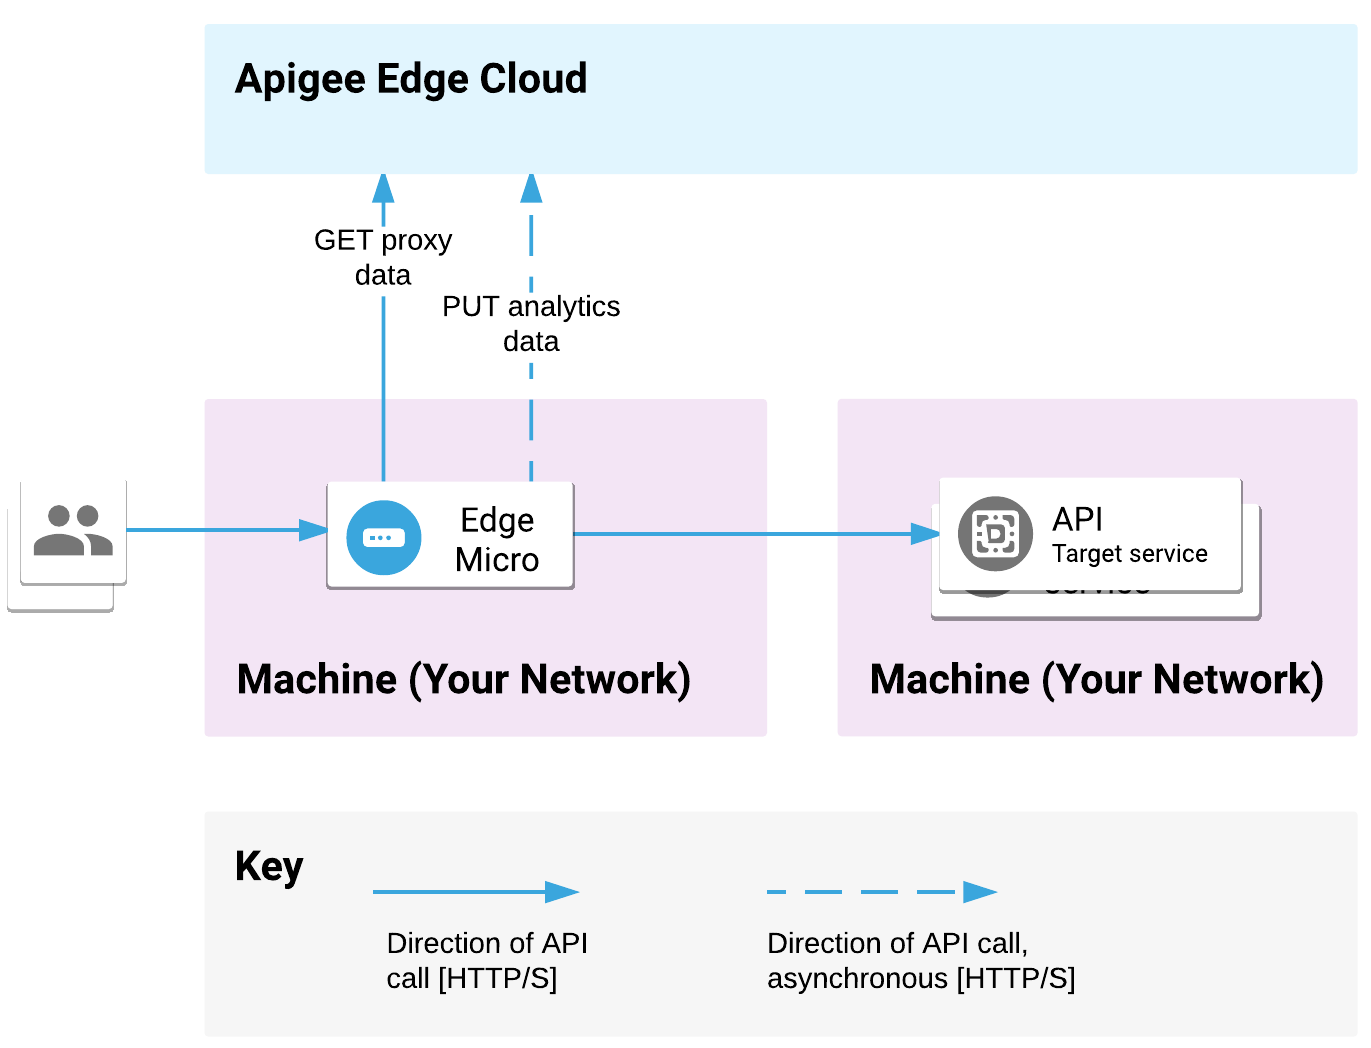 Edge Microgate 部署在一台机器上，后端服务部署在另一个位置。API 请求由微网关处理，请求会被发送到后端目标。Microgate 与 Apigee Edge Cloud 来通信代理和分析数据。